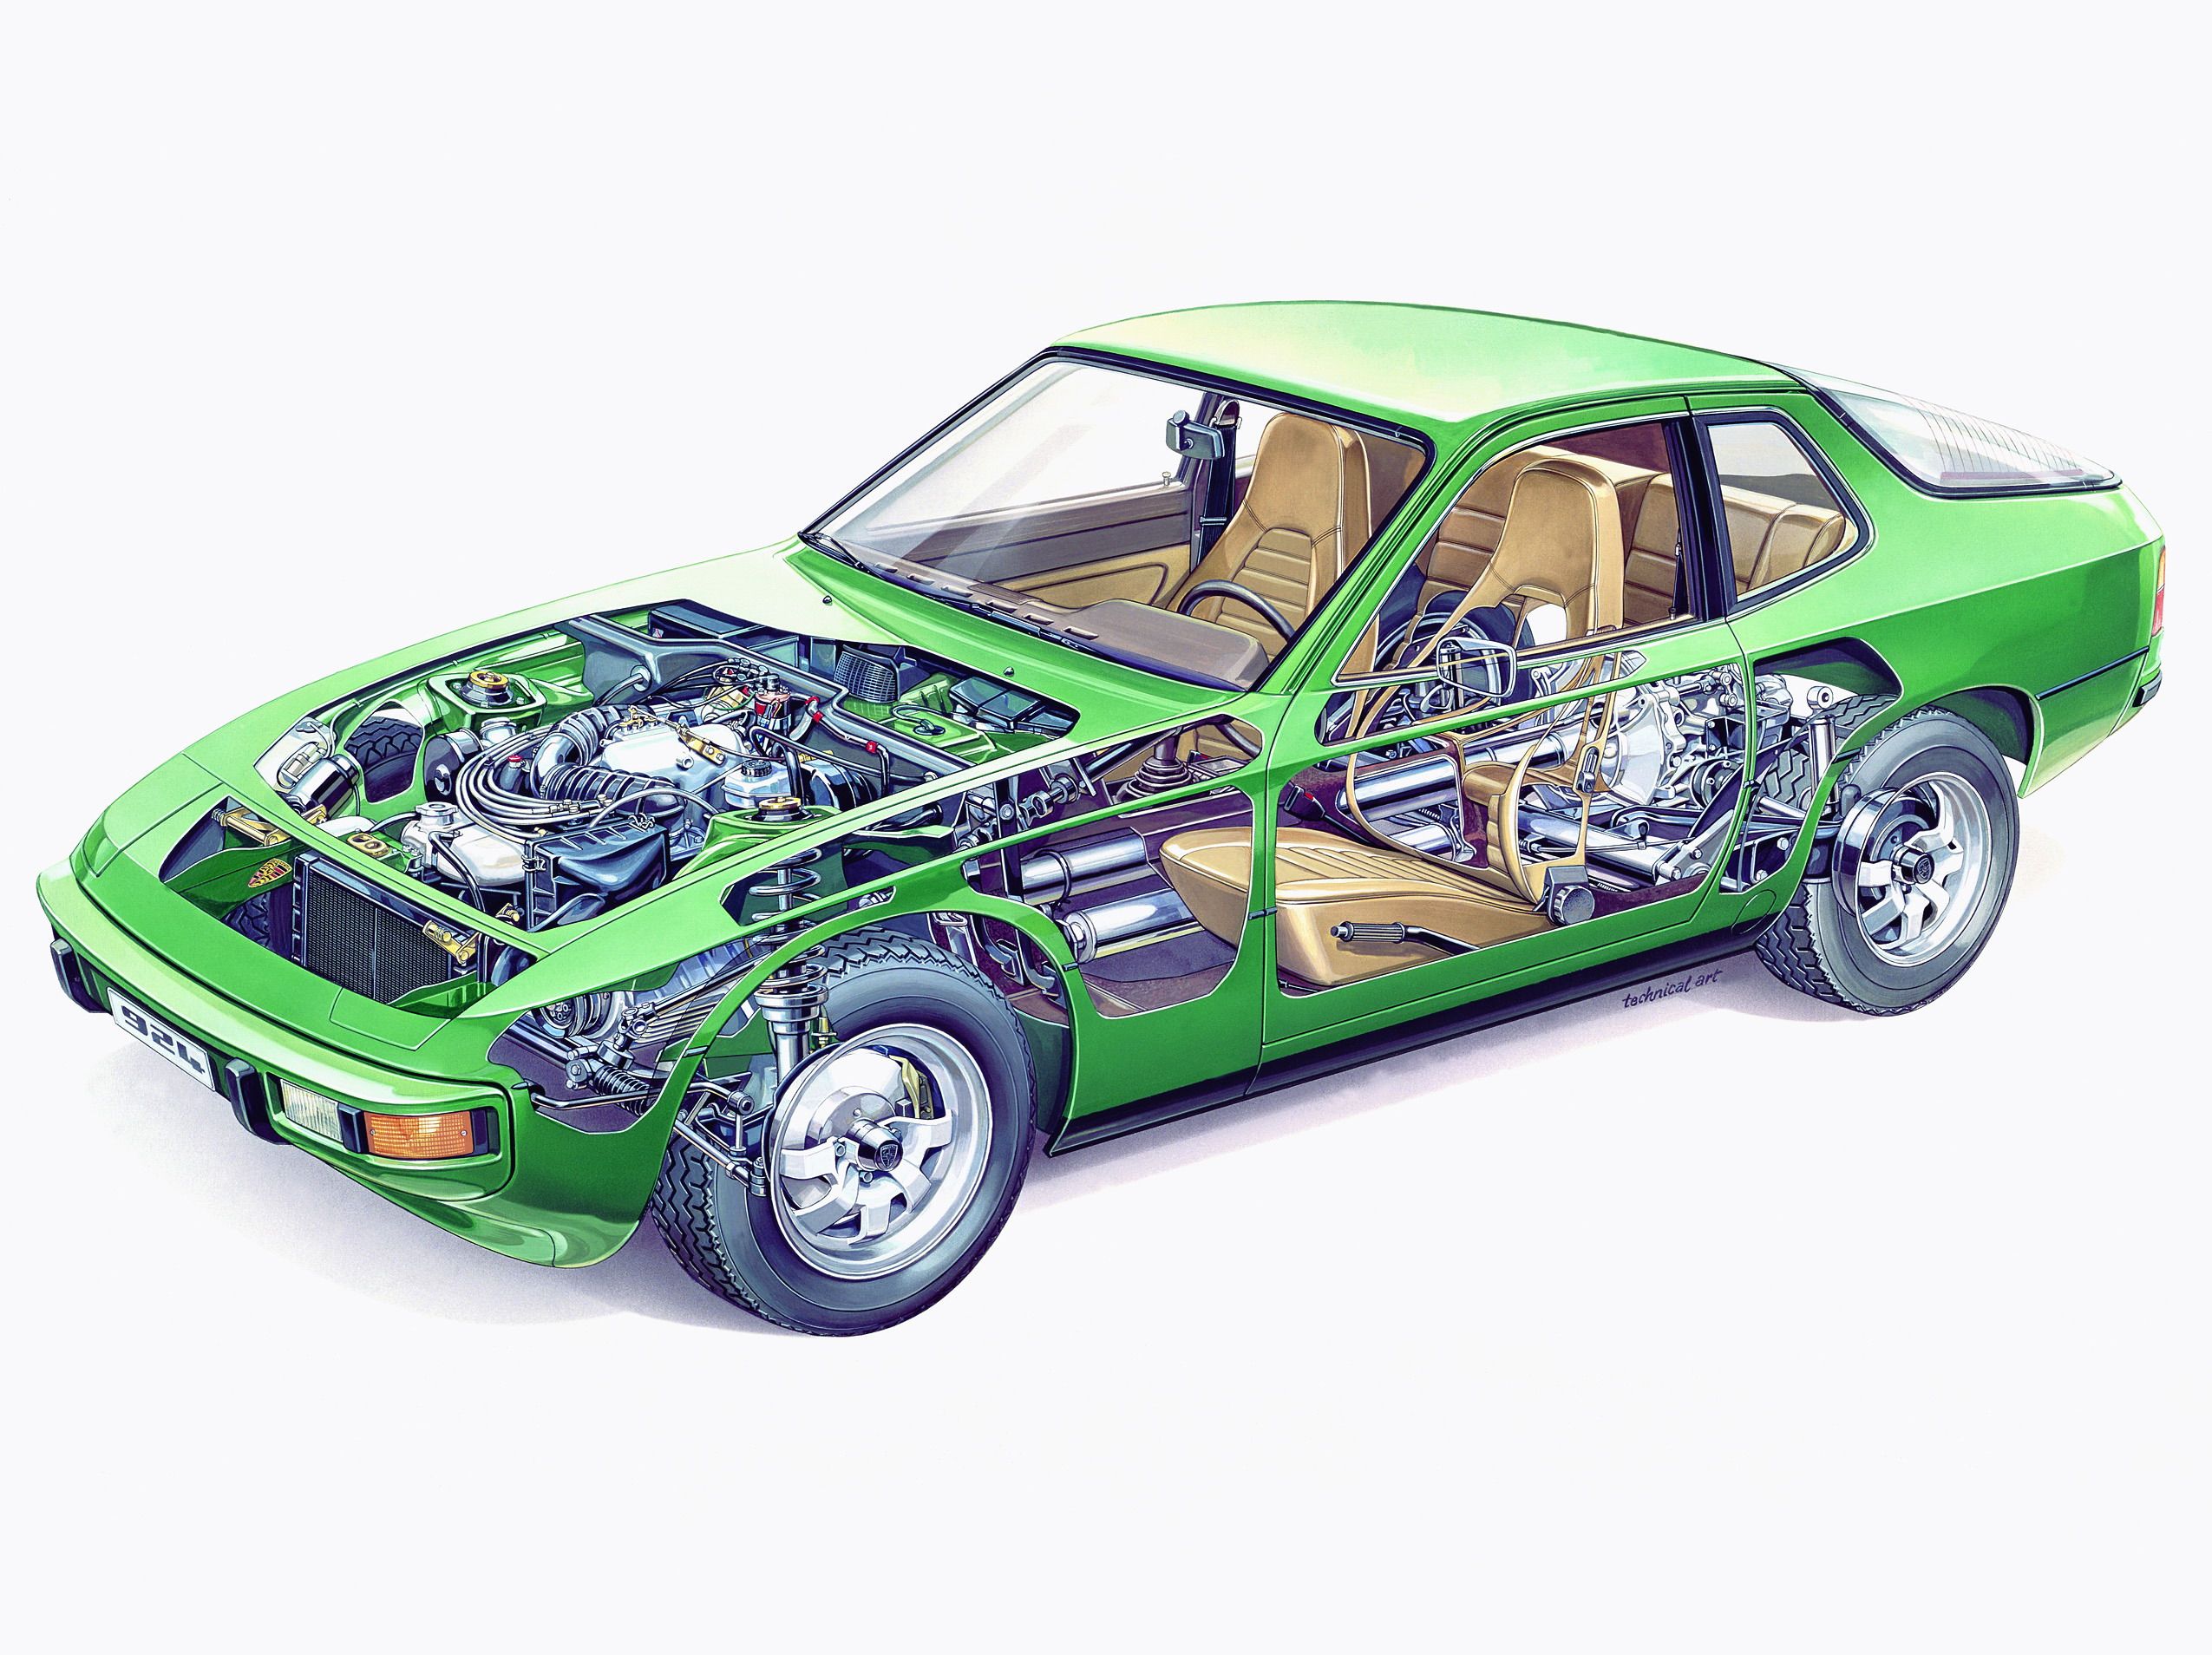 1976 - 1988 Porsche 924